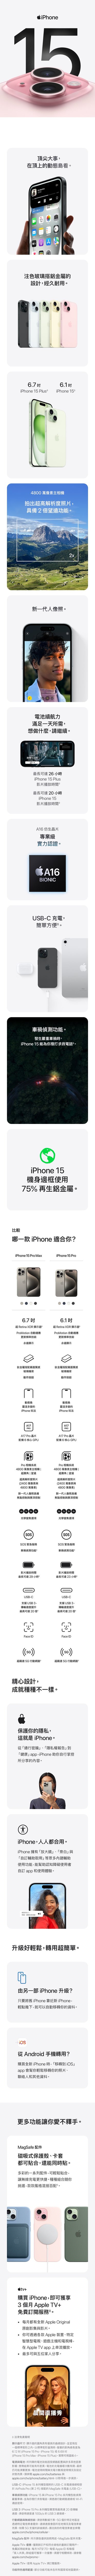 iPhone15yjƦbWʺAqFly MachineE޳Oregon StհѮ12RƷӤvlƧѿƶ StoreaϪ`fTݪ]pg[@6.7 6.1iPhone 15 Plus iPhone 15X4800 UDXWѪR׷Ӥ,2滷\s@NHӹqO@ѩһ,Q,~紵ڧTCp1u3,̪iF26 piPhone 15 Plusvɶ̪iF20 piPhone 15vɶCA16 ʹM~ŹO{ҡCA16BIONICUSB-C Rq,²KCtv+װ\CoY׮,iPhone 15 ରADϹqܡCiPhone 15بϥ75% A;TݡC@ iPhone AXA?iPhone 15 Pro MaxiPhone 15 Pro6.7 W Retina XDR ܾCProMotion ۰ʾA6.1 W Retina XDR ܾProMotion ۰ʾAsWv޳NûܧsWv޳NûgݷftPgݷftPIIʧ@sʧ@sʺAqʺAqFhܪFhܪiPhone kiPhone kA17PROA17 Pro t6֤ GPUA17PROA17 Pro t 6 ֤ GPUPro t4800 UD۾ W  滷WѪR׷Ӥ2400 UPPro ۾t4800 UD۾ Ws  滷WѪR׷Ӥ2400 UP4800U4800Us@NHӨƵJIP`s@NHӨƵJIP`.5x 1x2x5xܵJﶵ.5x 1x2x 3xܵJﶵSOSSOSSOSASOSAȨװ\Cװ\Cvɶvɶ̪iF29 pɳ̪iF23 p USB-C䴩USB3,ǿt״ɳ̰iF20 CUSB-C䴩USB 3,ǿt״ɳ̰iF20 Face IDFace ID(())Wtt5Gʺ5G(())Wtt5Gʺ߳]p,Nغؤ@ˡCO@Ap,oNO iPhoneCuqK_Bupvivudvapp,iPhone UAۦxҤɪeCiPhone,HHXΡCiPhone ֦ujvBuǥաvPuۭqUΡvhUΥ\,U{êϥΪ̨Ϧۭqapp MϥCLkH,ۤ@Y¦vCɯŦnP,ζW²Cѥt@iPhone ɯ?unN iPhone as iPhone,IXU,NiH۰ʲAơCq Android ?ʶRs iPhone ,u iOSvapp |APAӤBpHMLơCh\ARCMagSafe tϧlO@ߡBdMiKX,ٯPɶKChm@tCt,iPKX,LuRqֱCغزզXHAD,ڴڭVfʰtC+ʶR iPhone,Yi3 Apple TV+KOqAȡCC볣s Apple OriginalмvPvCAizLU Apple ˸mBSwzqBCDMq,bApple TV app WyC̦hiPaHɡCᶡqkߧKdnܾؤo:ܾꨤ㦳uu]p,çe{b@ӼзǯxΤCHзǯxζq,ù6.12 (iPhone(iPhoneq15Pro﨤u׬15 ProBiPhone 15)6.69MaxBiPhone 15 Plus)CڥiϸpCPq:ҦC|qį]tmP\hL]vT;ڵGi঳ҮtCqRq`Ʀ,̲פiභn󴫡CqϥήɶPRqƵϥαpγ]wAӲаѻPapple.Capple.com/tw/batteries\com/tw/iphone/battery.html,Hoi@BTCUSB-C:iPhone 15tCHUSB-C Rqsuۮe AirPods Pro (2N)ftMagSafe Rq (USB-C)Cװ\:iPhone 15 PiPhone 15 Pro tC఻Y,ìAqܨϥΡCWi-FiDϹqܡCzLʺsuUSB3:iPhone15t,ϥγt׹FPro tCn{̰F20ǿ10Gb/s  USB 3suCʺPLu޳N:ϥμƾڤסC5GȩSwaϨózLSwqH~̴ѡCsut׷|]ҦbapΦӲCp 5G 䴩ԲӸT,ЬߧAqapple.com/tw/iphone/cellularCqH~̫H~̨ðѾ\MagSafe t:ҥCȨѻγ~CMagSafe ttCApple TV+uf:ȭsqMŦX檺sq\ΤCKOեε,CNT$170CCApple IDMCӡuaH@ɡvsնȥiɤ@ufCu,аѾ\apple.com/tw/promoCApple TV+:ϥApple TV+q\AȡC\SAνd:\iॼbҦaΦaϴѡC2x